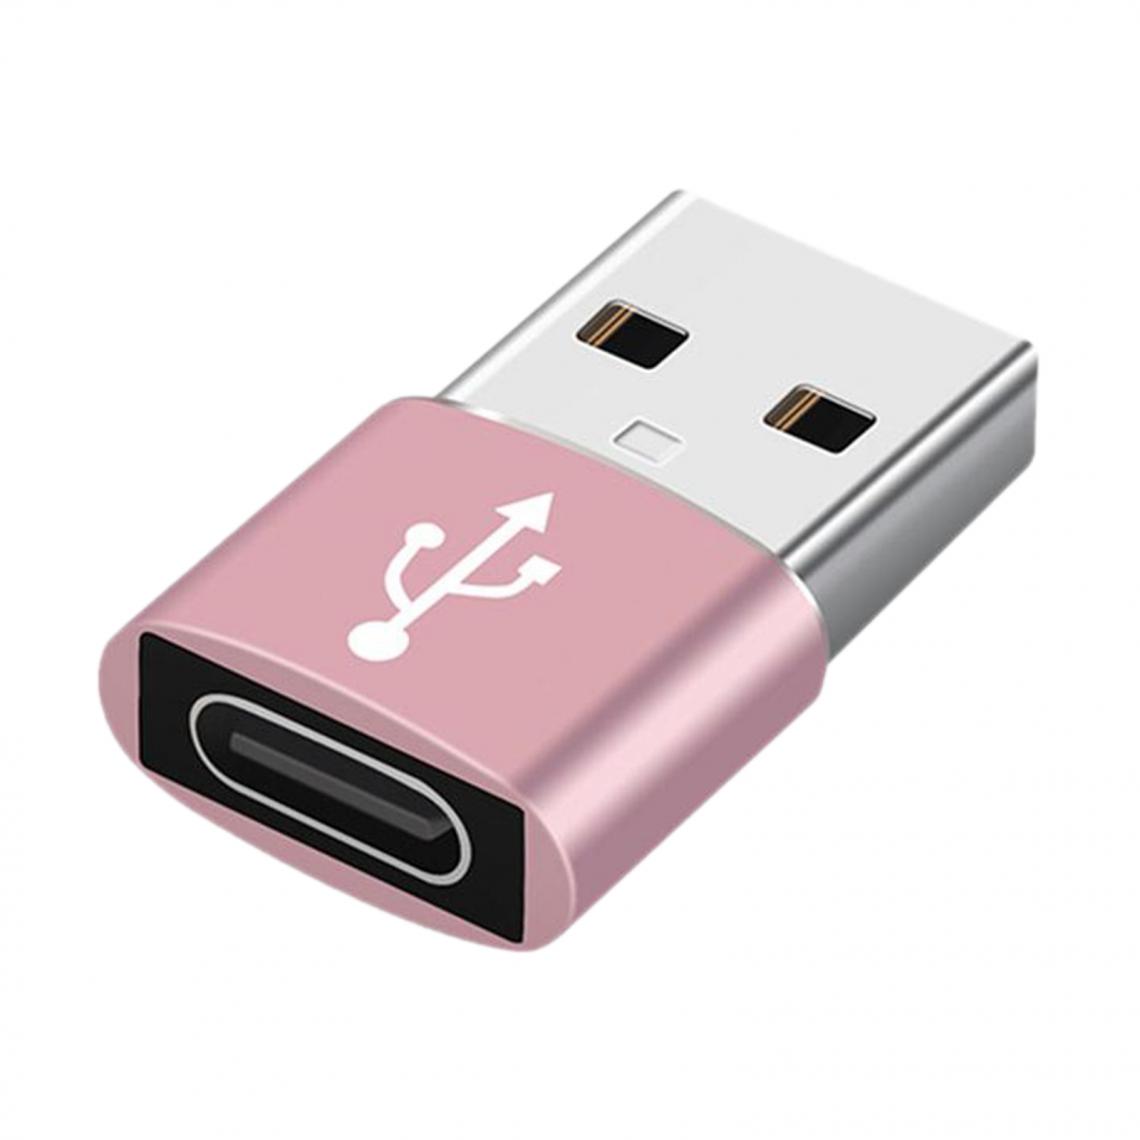 marque generique - Adaptateur De Convertisseur USB Vers USB C Multicolore 2-en-1 Pour Transfert De Données PC Portable Or - Hub